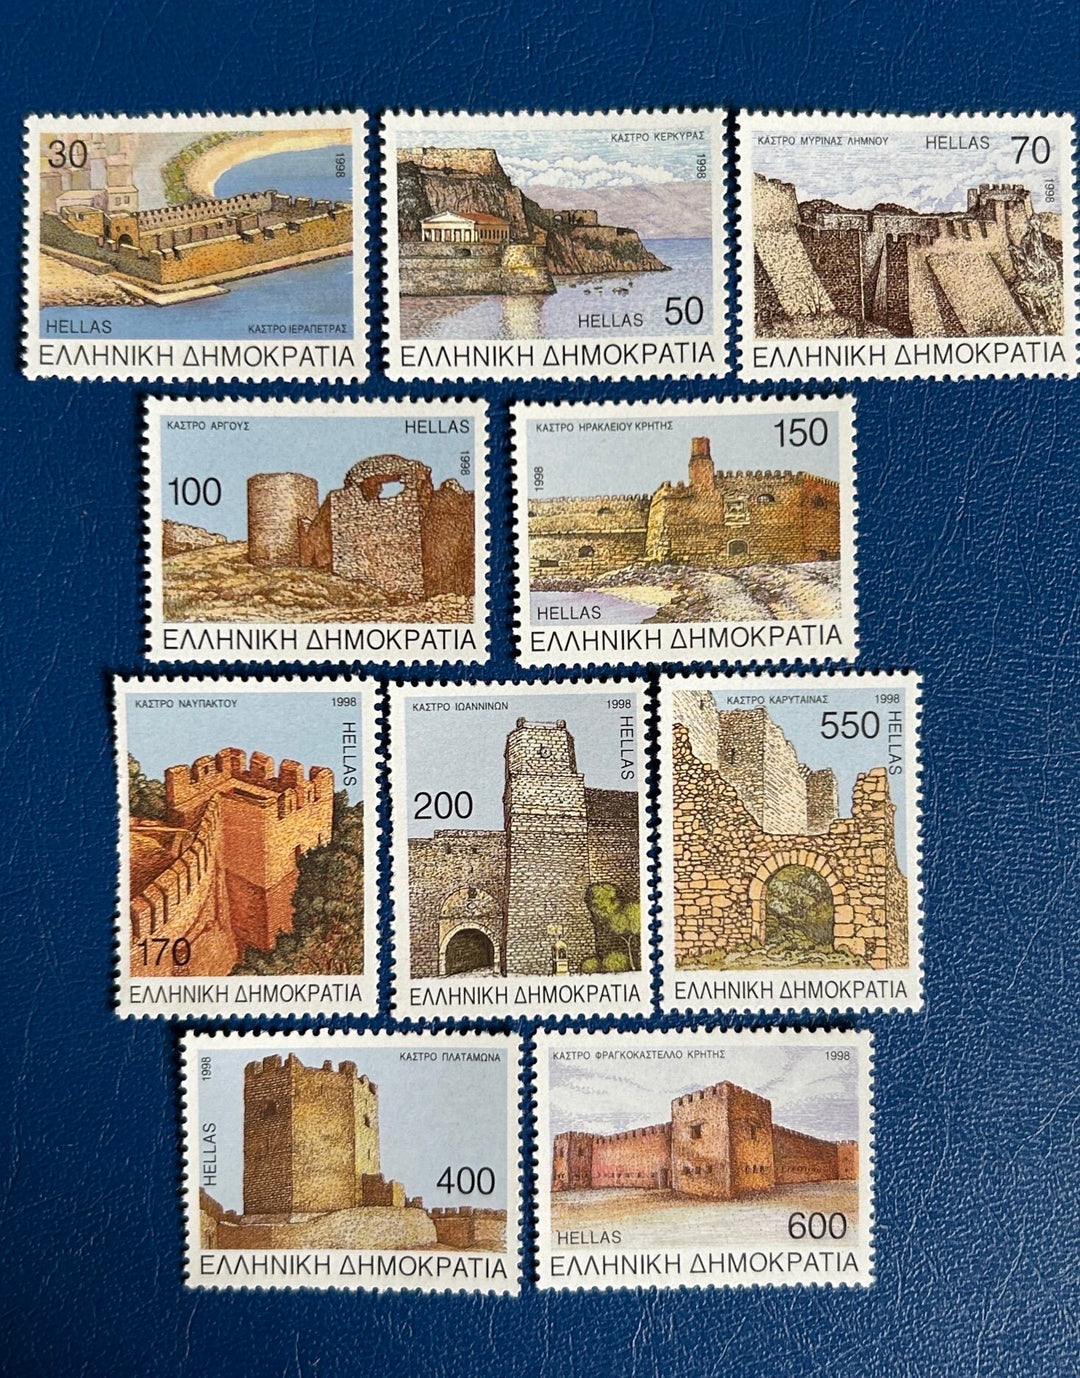 Greece - Original Vintage Postage Stamps- 1998 - Greek Castles - for the collector, artist or crafter